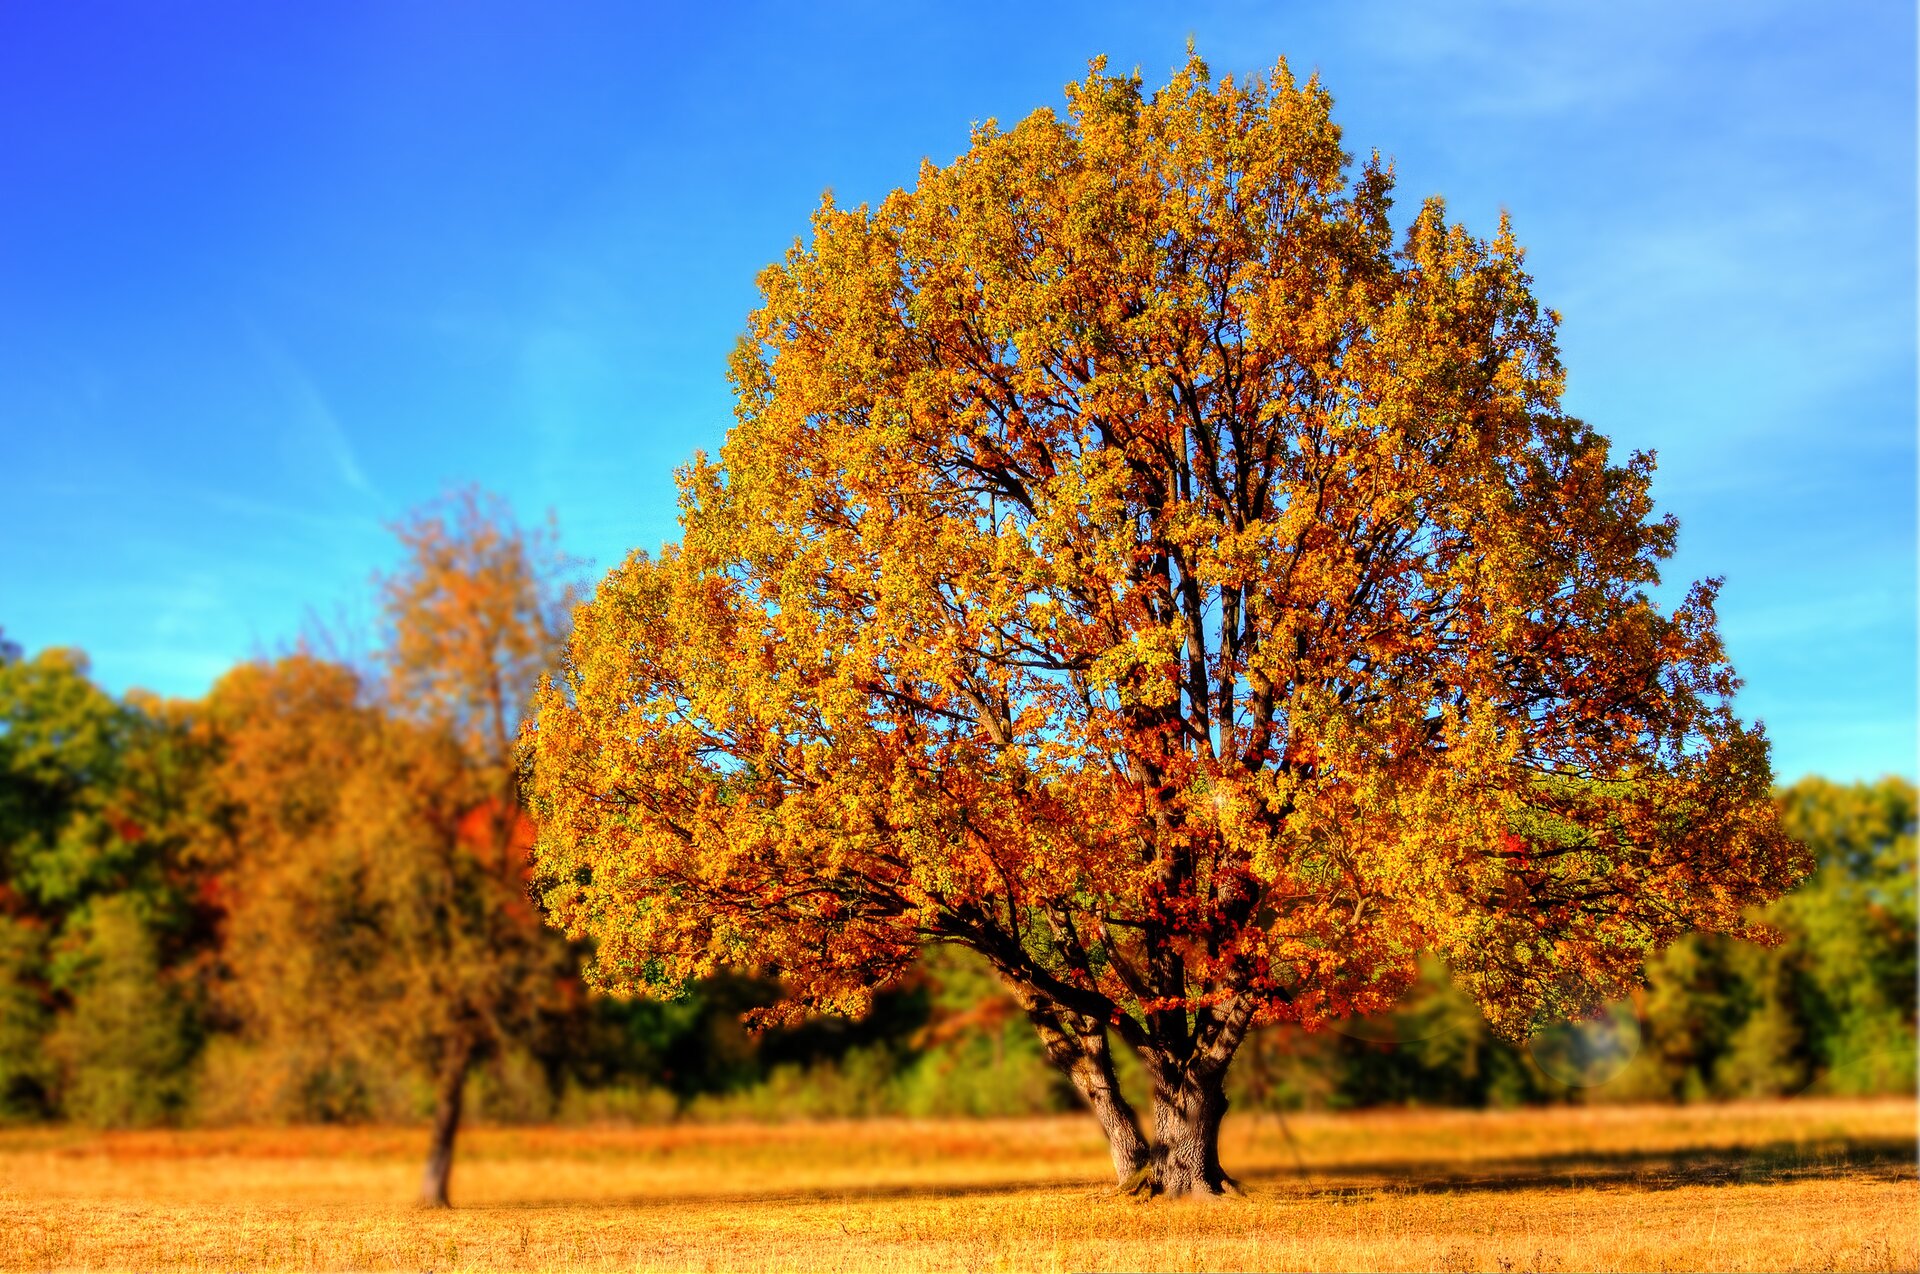 Fotografia prezentuje drzewa liściaste jesienią. Na pierwszym planie duże, rozłożyste, samotne drzewo z żółtymi, brązowymi i zielonymi liśćmi. W tle widoczne drzewa liściaste w podobnych kolorach.